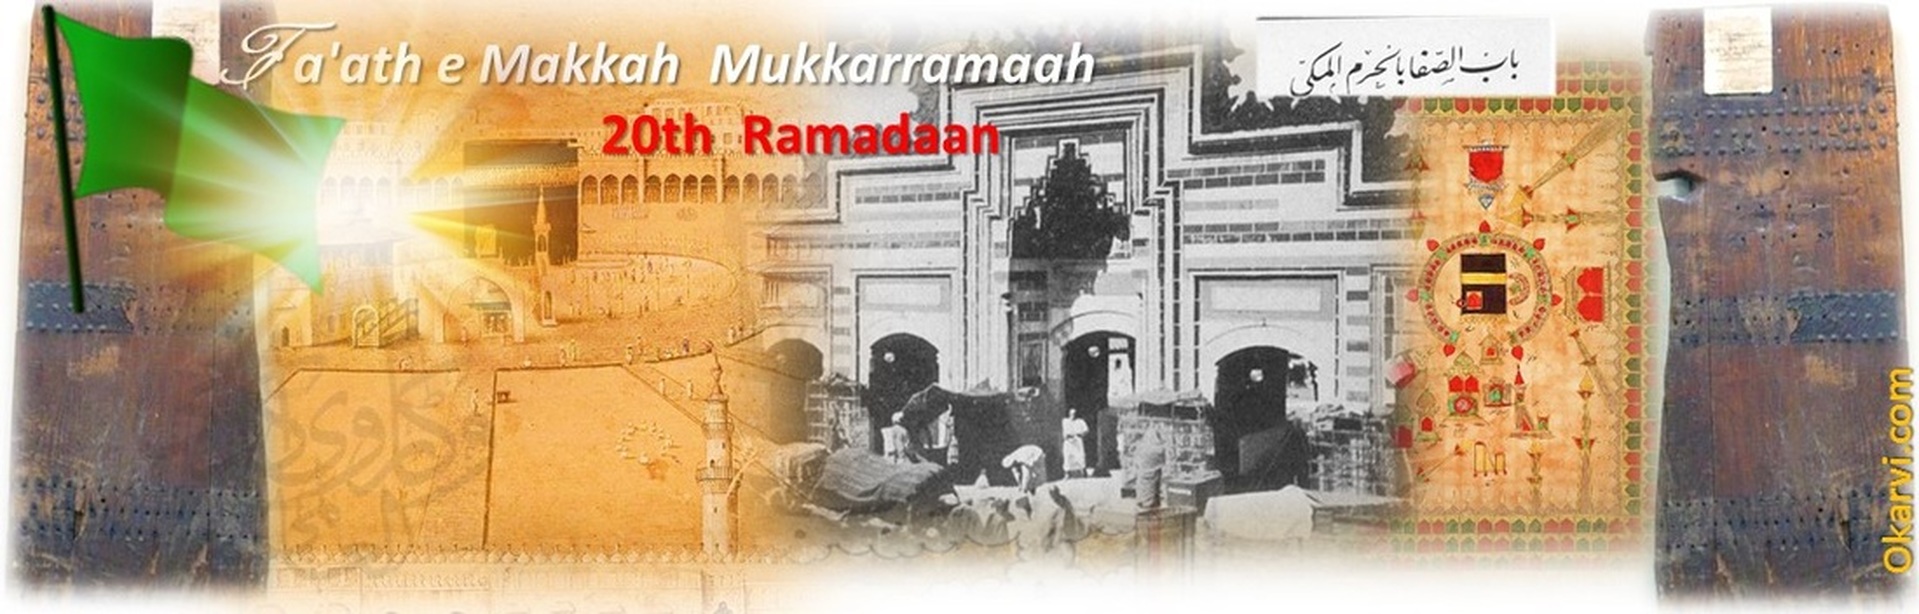 20th  Ramadaan:  Fa'ath e Makkah  Mukkarramaah